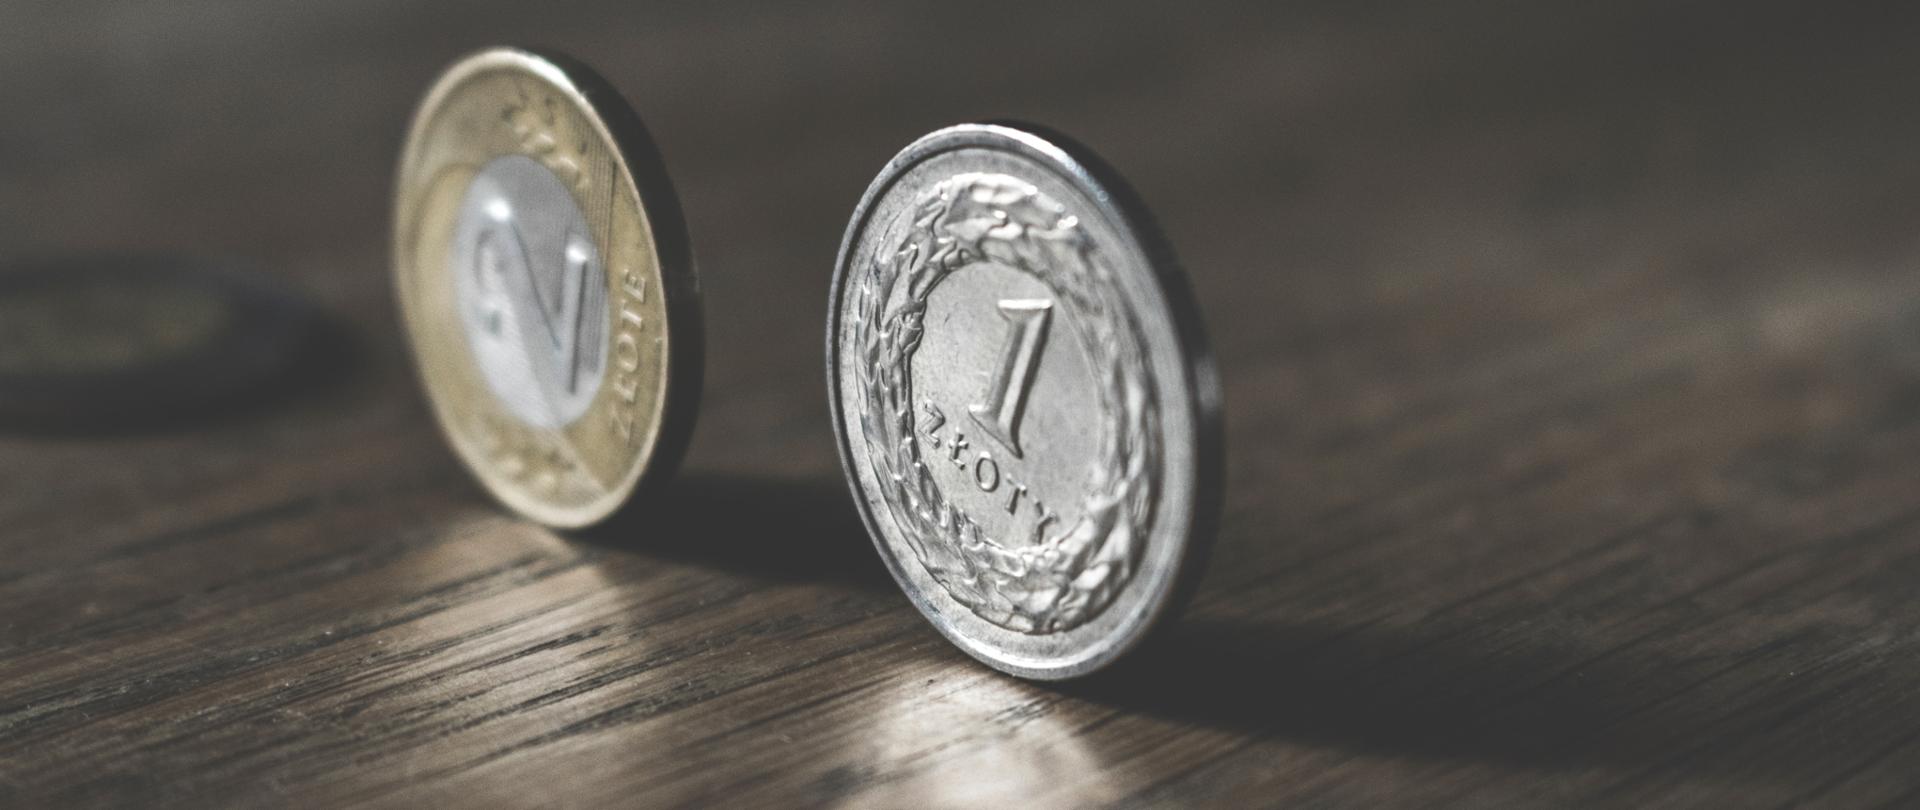 Moneta jednozłotowa oraz dwuzłotowa; stojące na stole